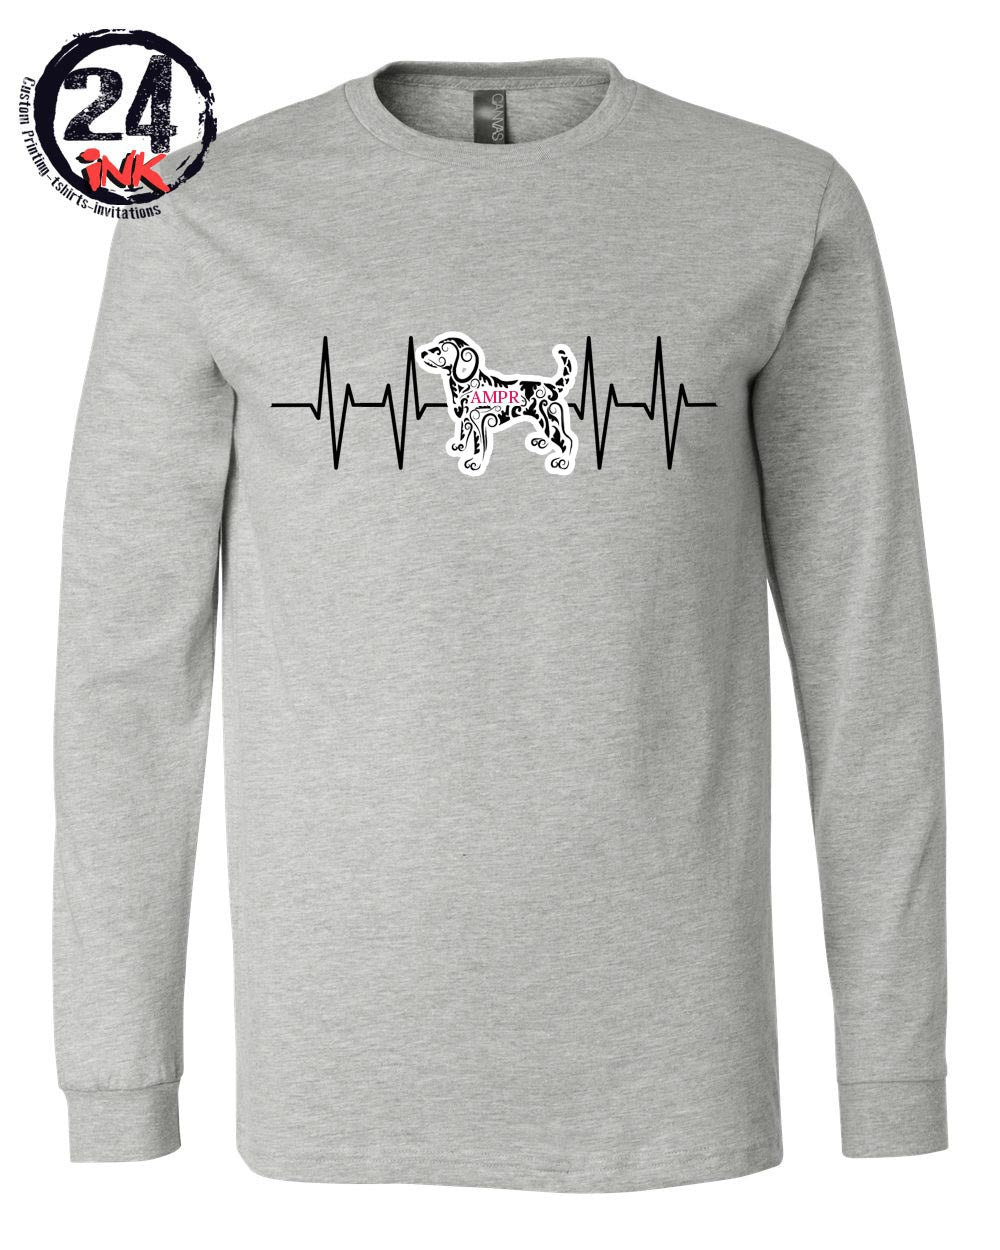 AMPR Heartbeat Long Sleeve Shirt